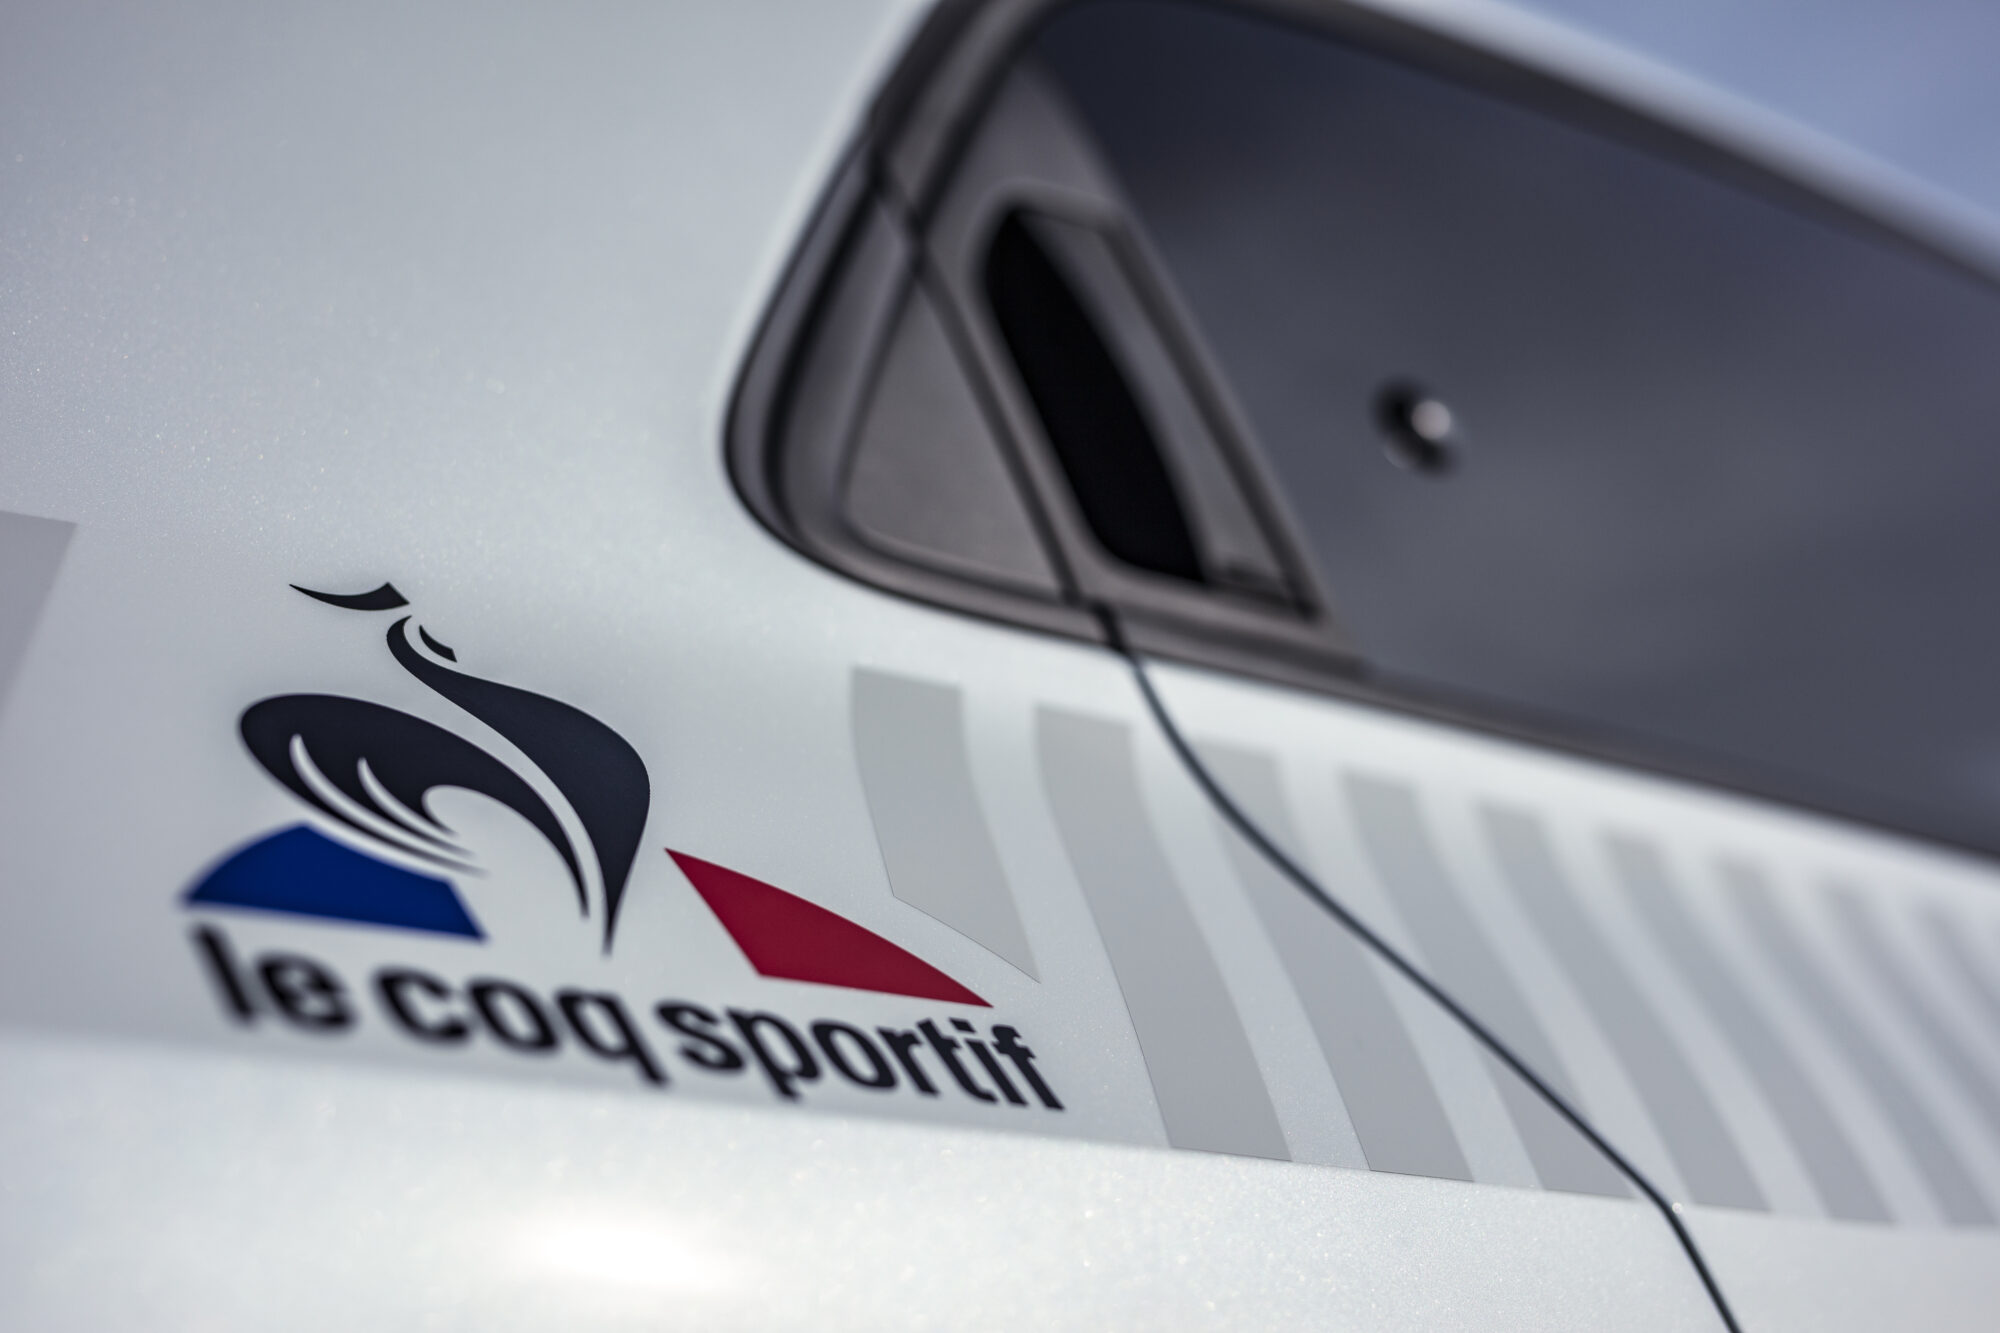 2019 - Nouvelle Renault TWINGO Série Limitée Le Coq Sportif